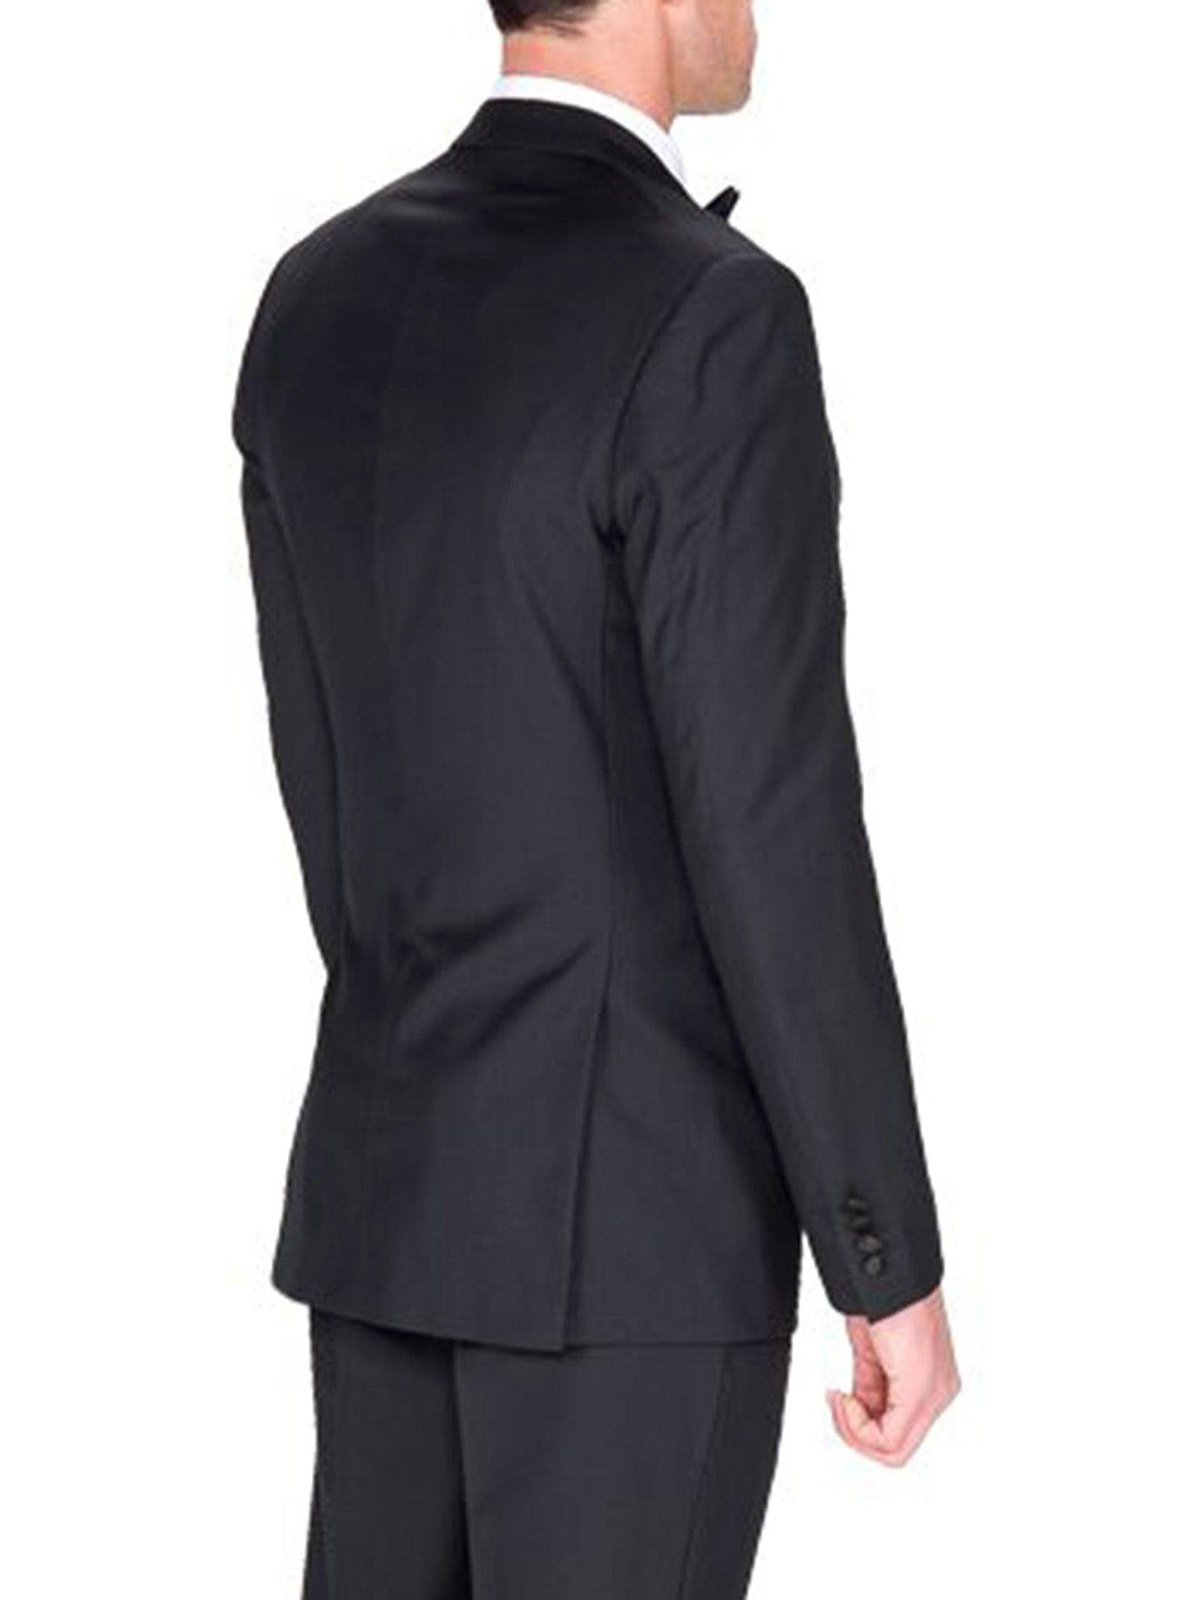 Braveman TUXEDOS Braveman Slim Fit Solid Black One Button Tuxedo Tux Suit With Peak Lapels